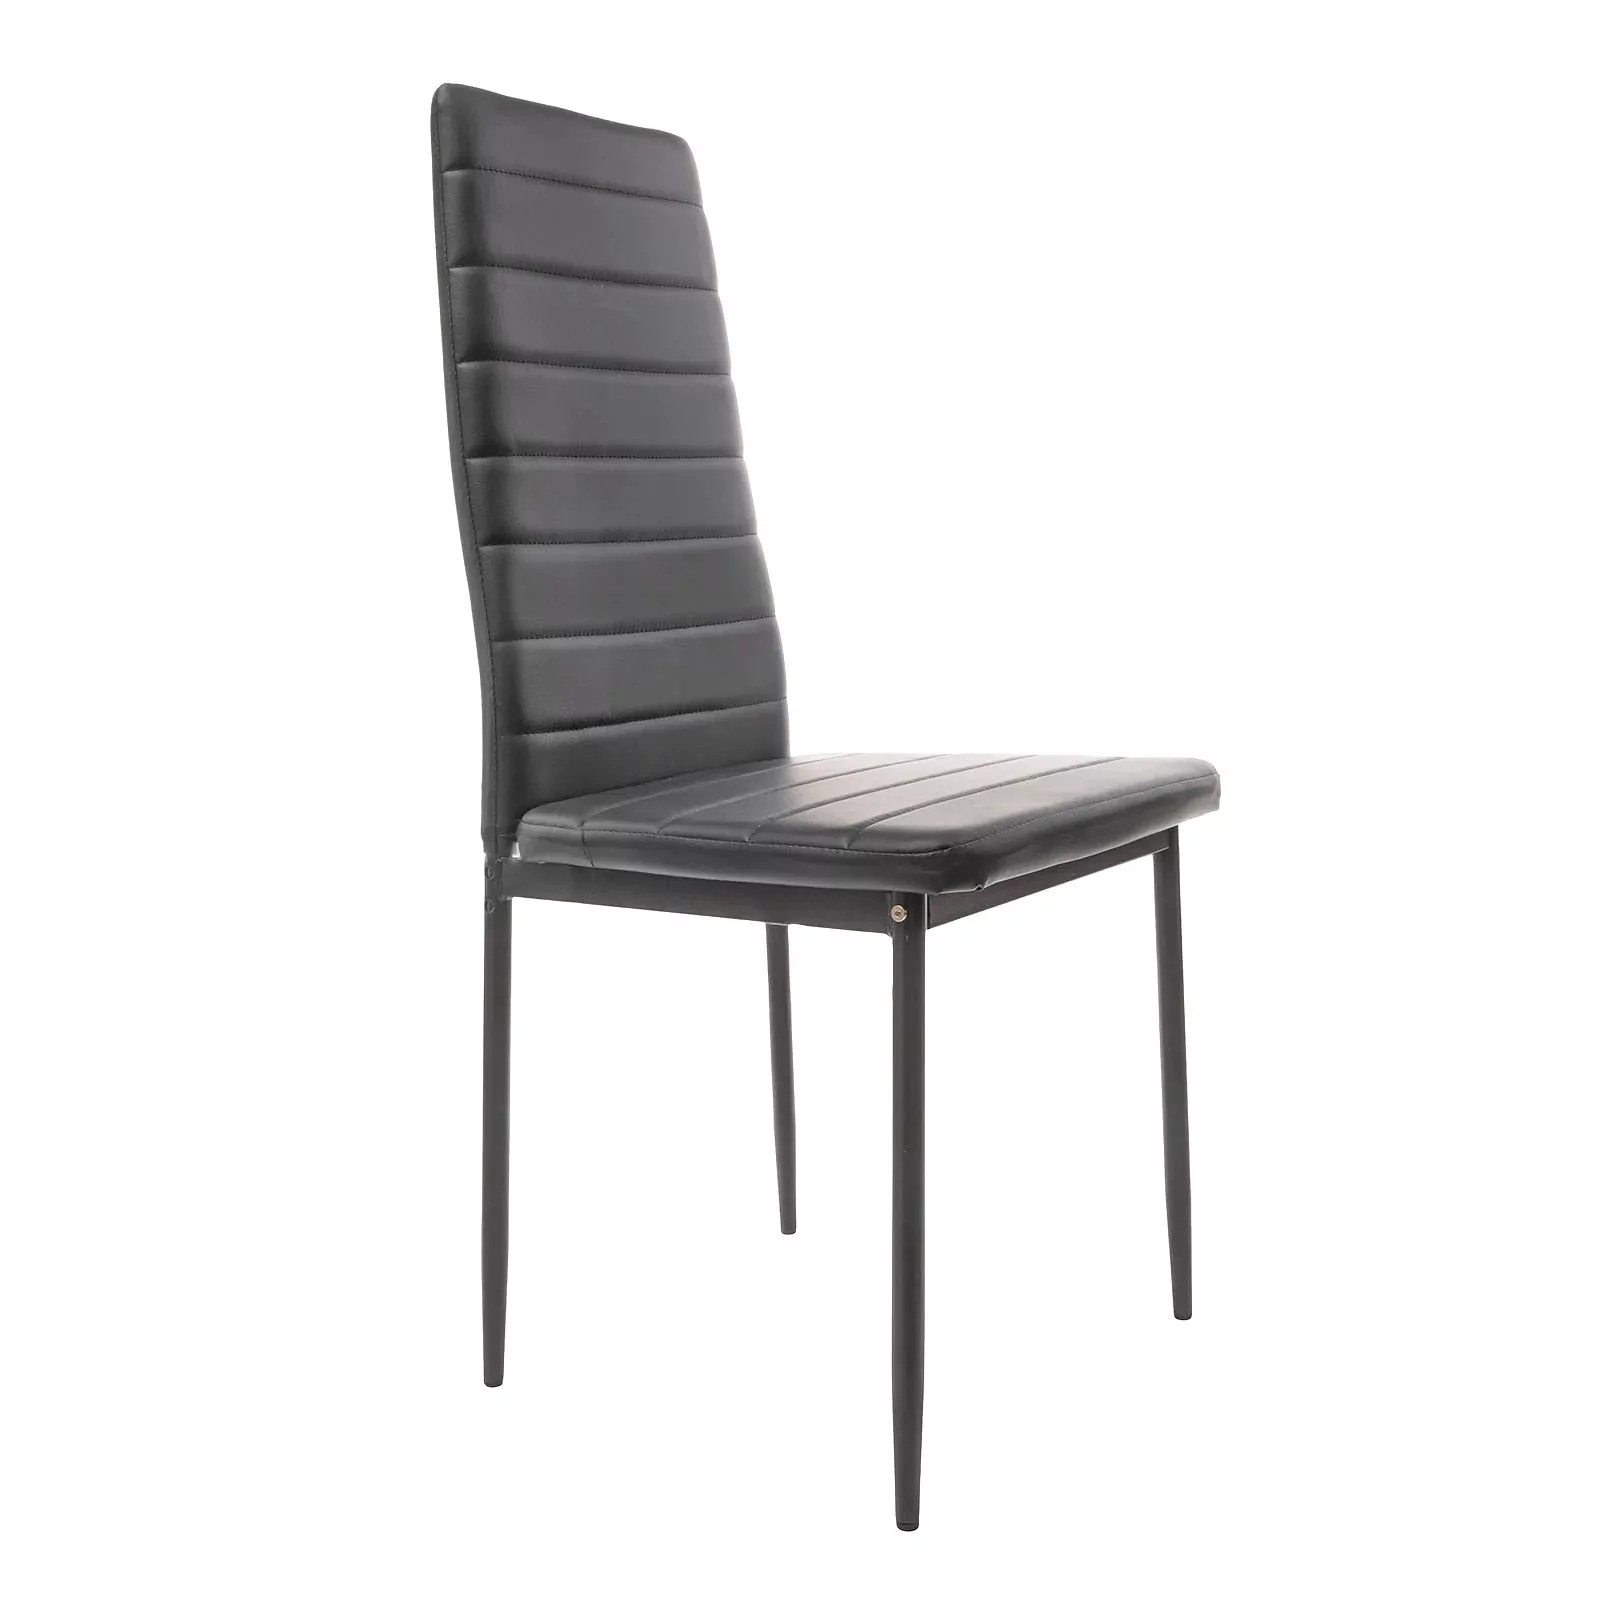 Krzesło do salonu, jadalni, eko skóra, 42x44x97 cm, czarny